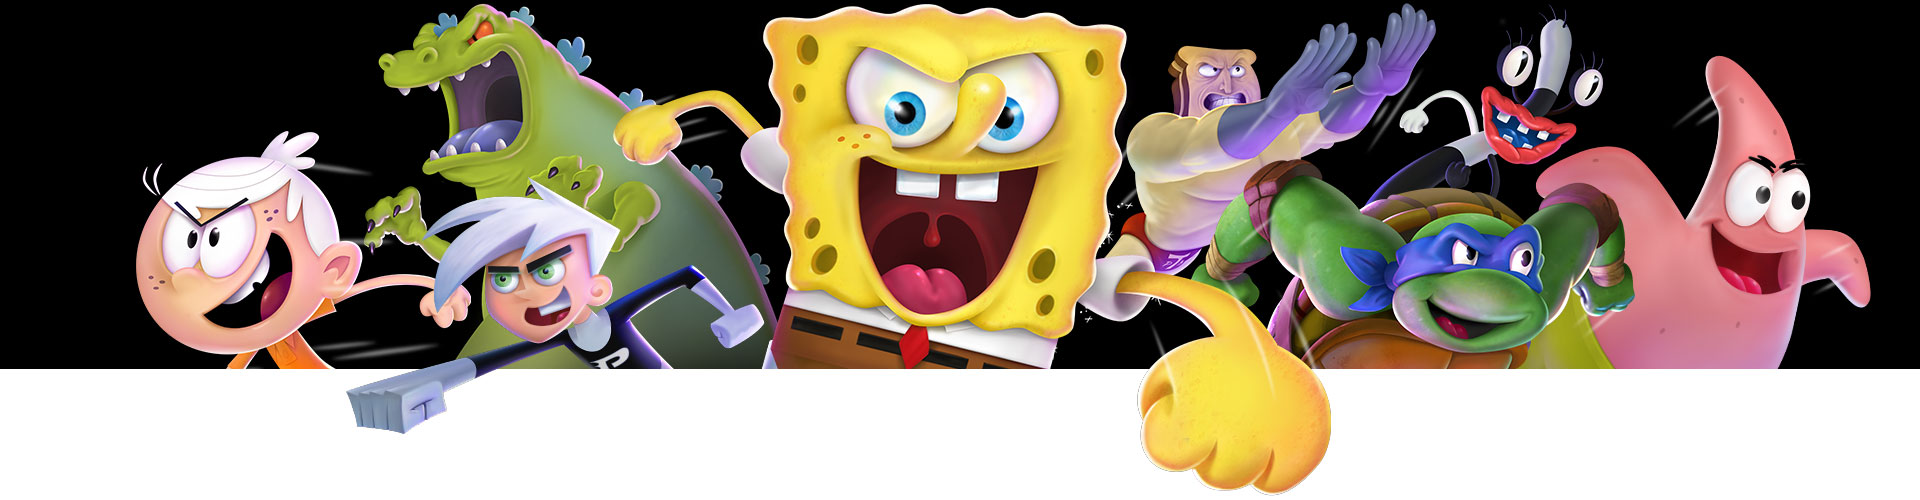 Bob Esponja, Danny Phantom, Reptar e outros personagens da Nickelodeon estão prontos para lutar